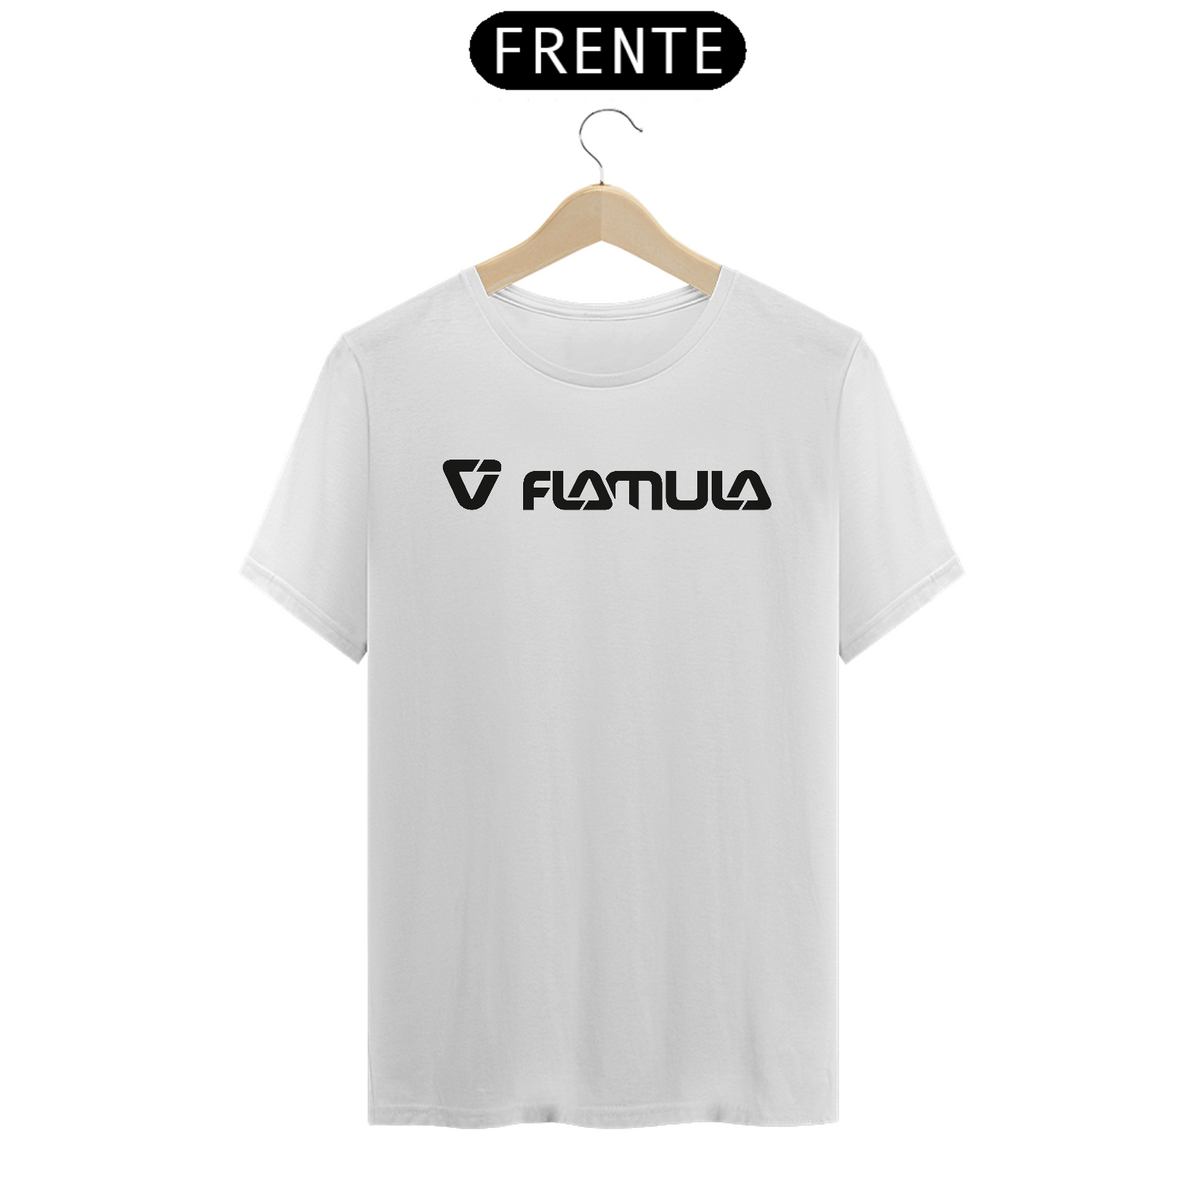 Nome do produto: Camiseta Flamula branca